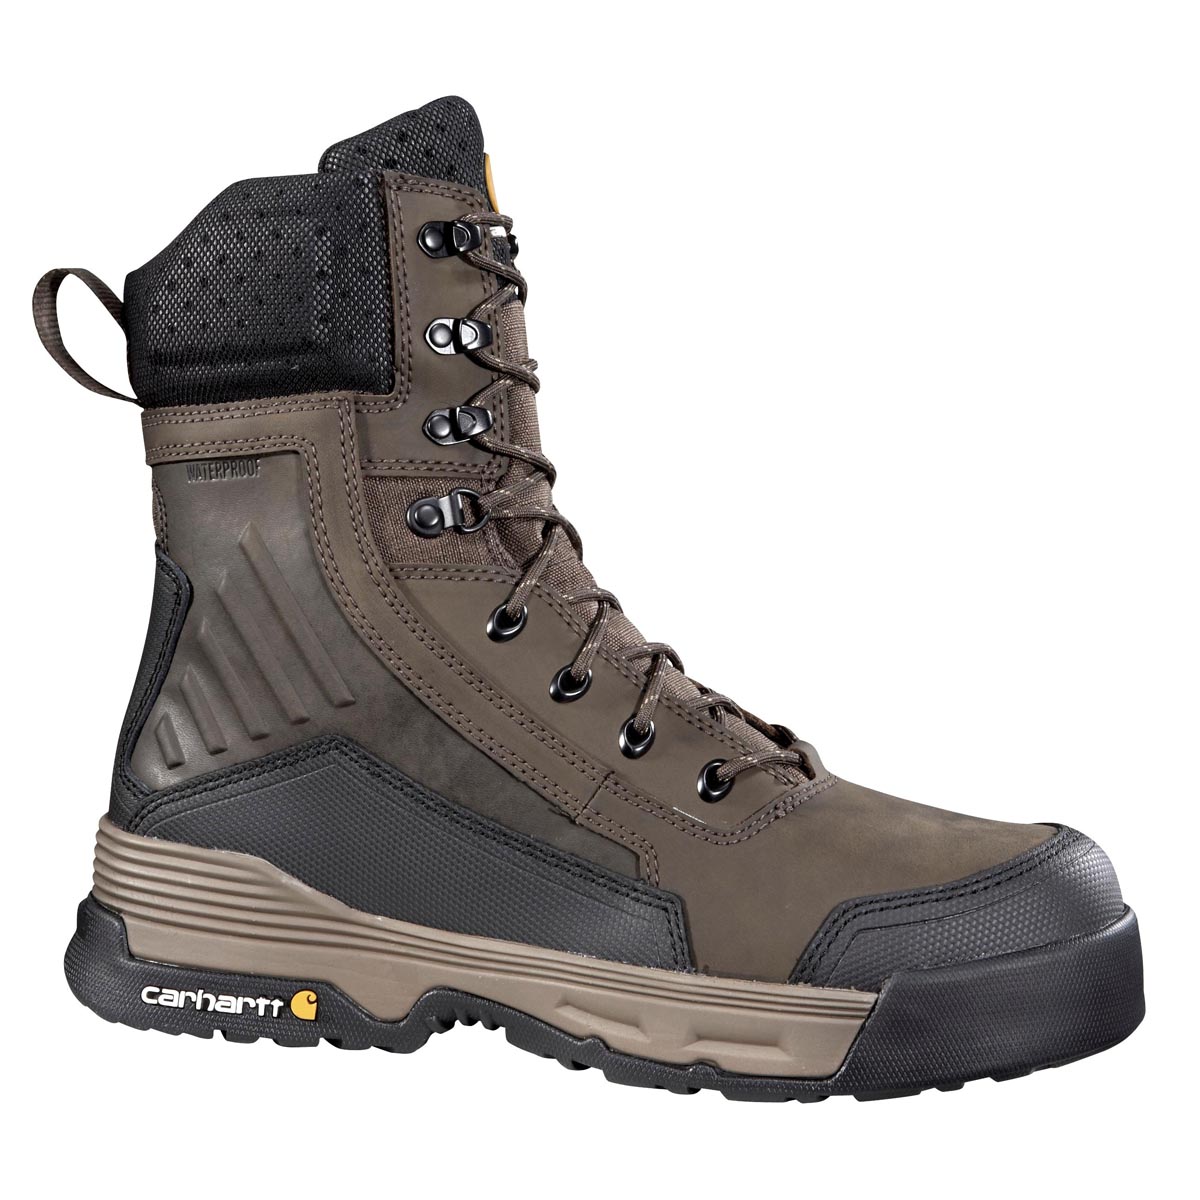 Carhartt Men's 8 Inch Waterproof Work Boot Composite Toe